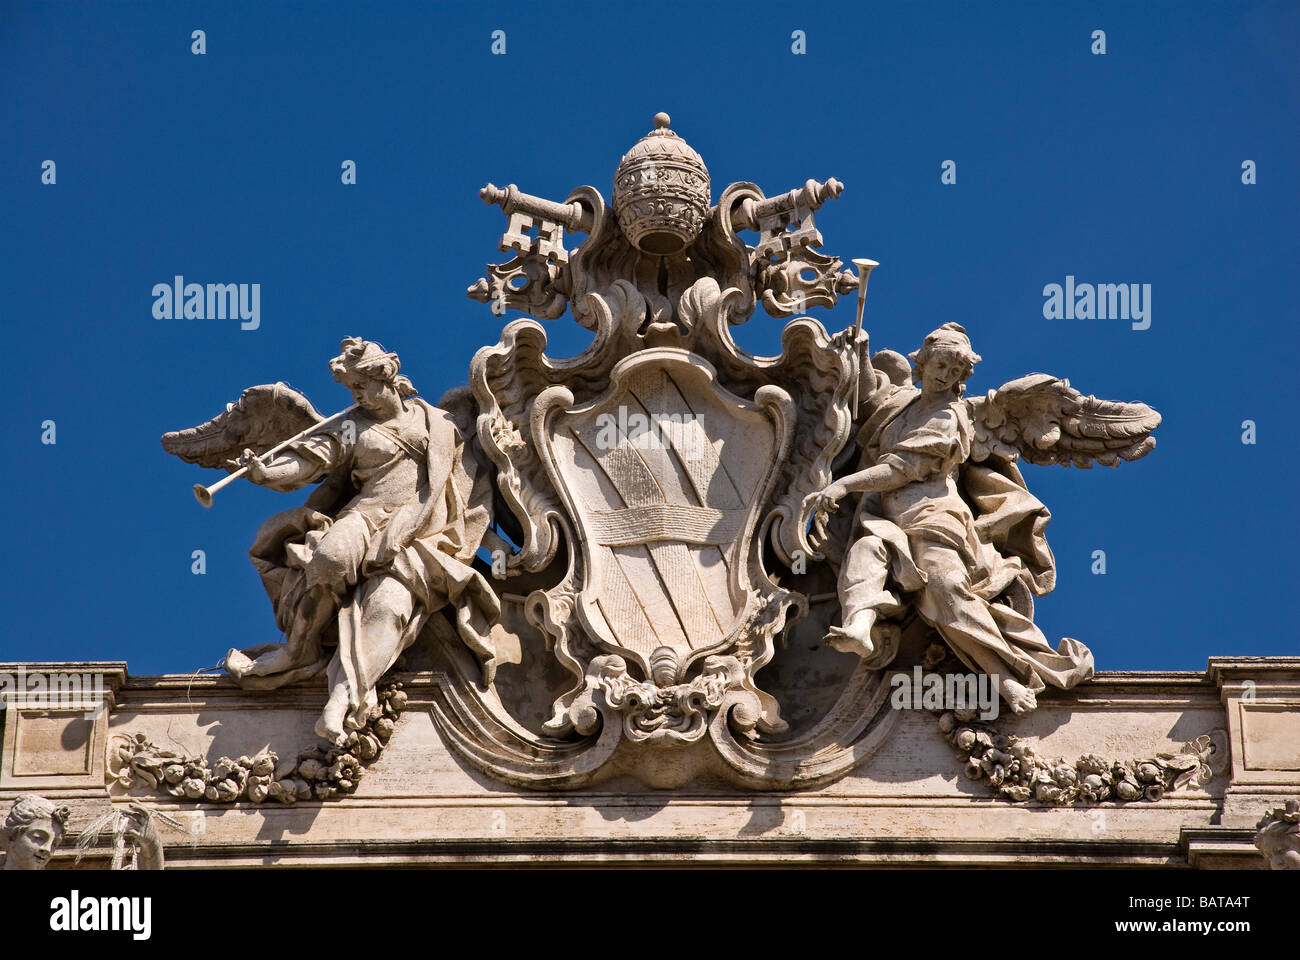 Emblème de la pape Clemente XII au-dessus de la fontaine de Trevi palace à Rome - Italie Banque D'Images